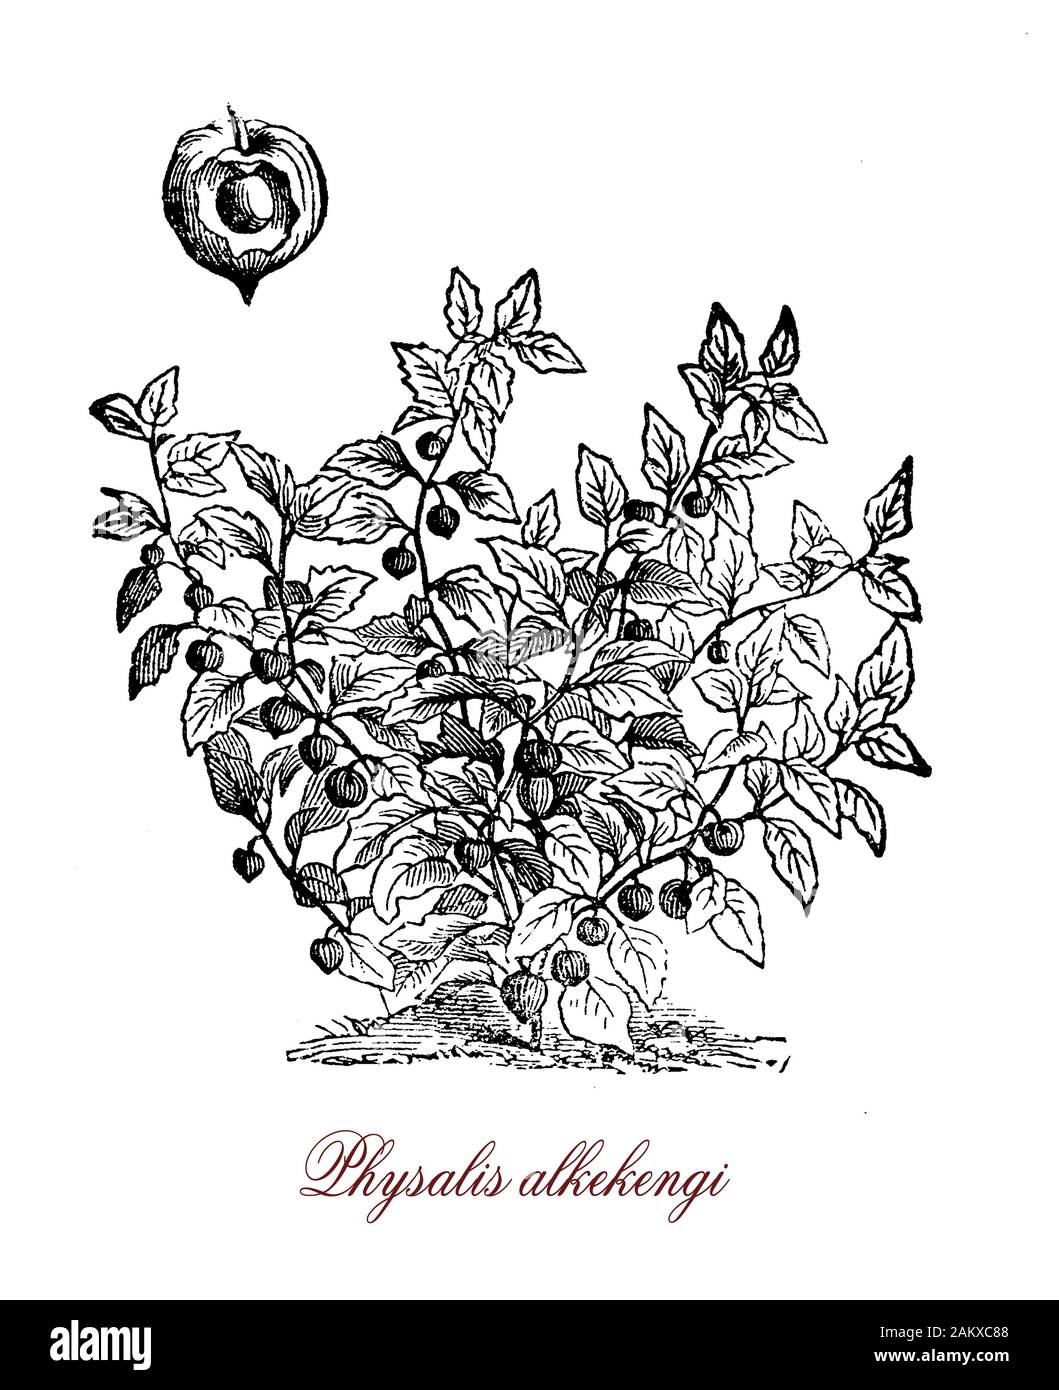 Physalis alkekengi ou lampe chinoise est cultivée comme plante ornementale de couleurs orange à rouge fruits couverts par un calice cartonneux ressemblant à la forme d'une lanterne chinoise. Les fruits sont comestibles. Banque D'Images